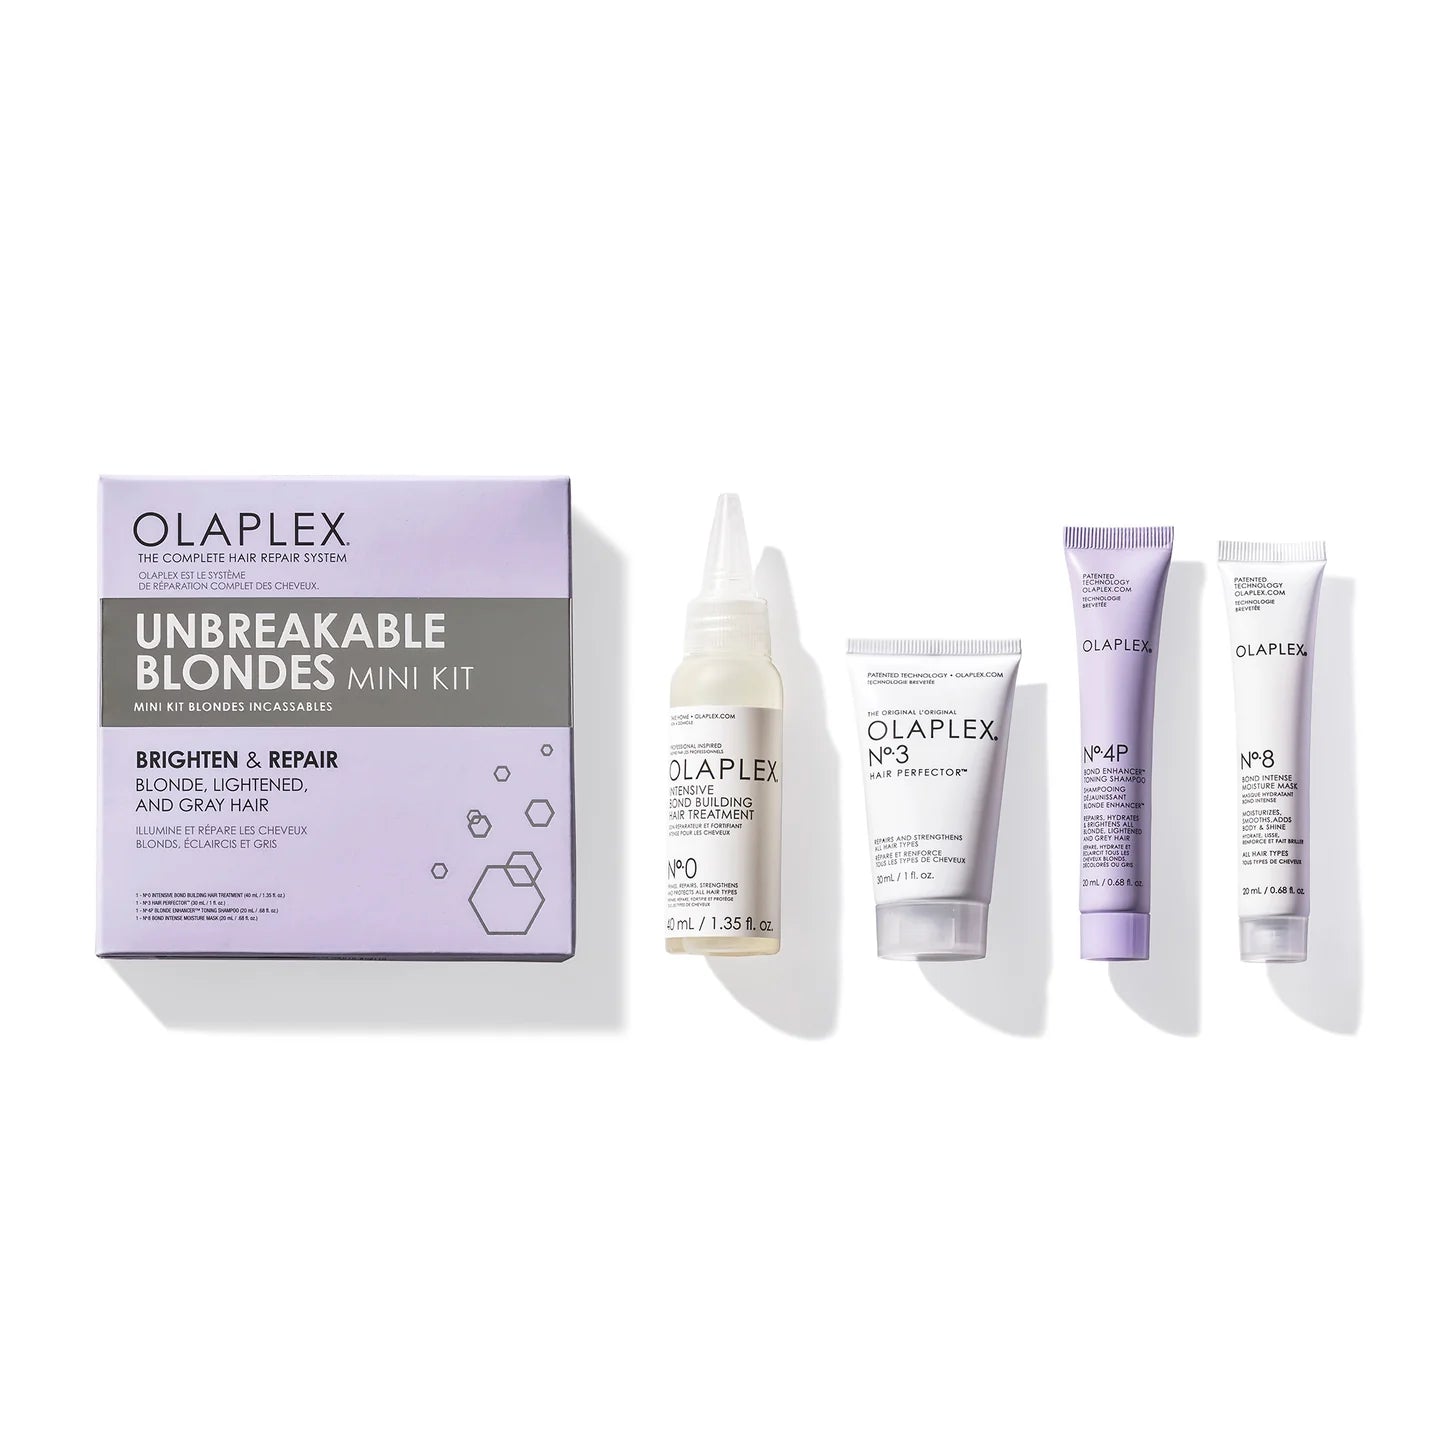 Мини-набор для восстановления блонда от Olaplex (Olaplex Unbreakable Blondes Mini Kit)